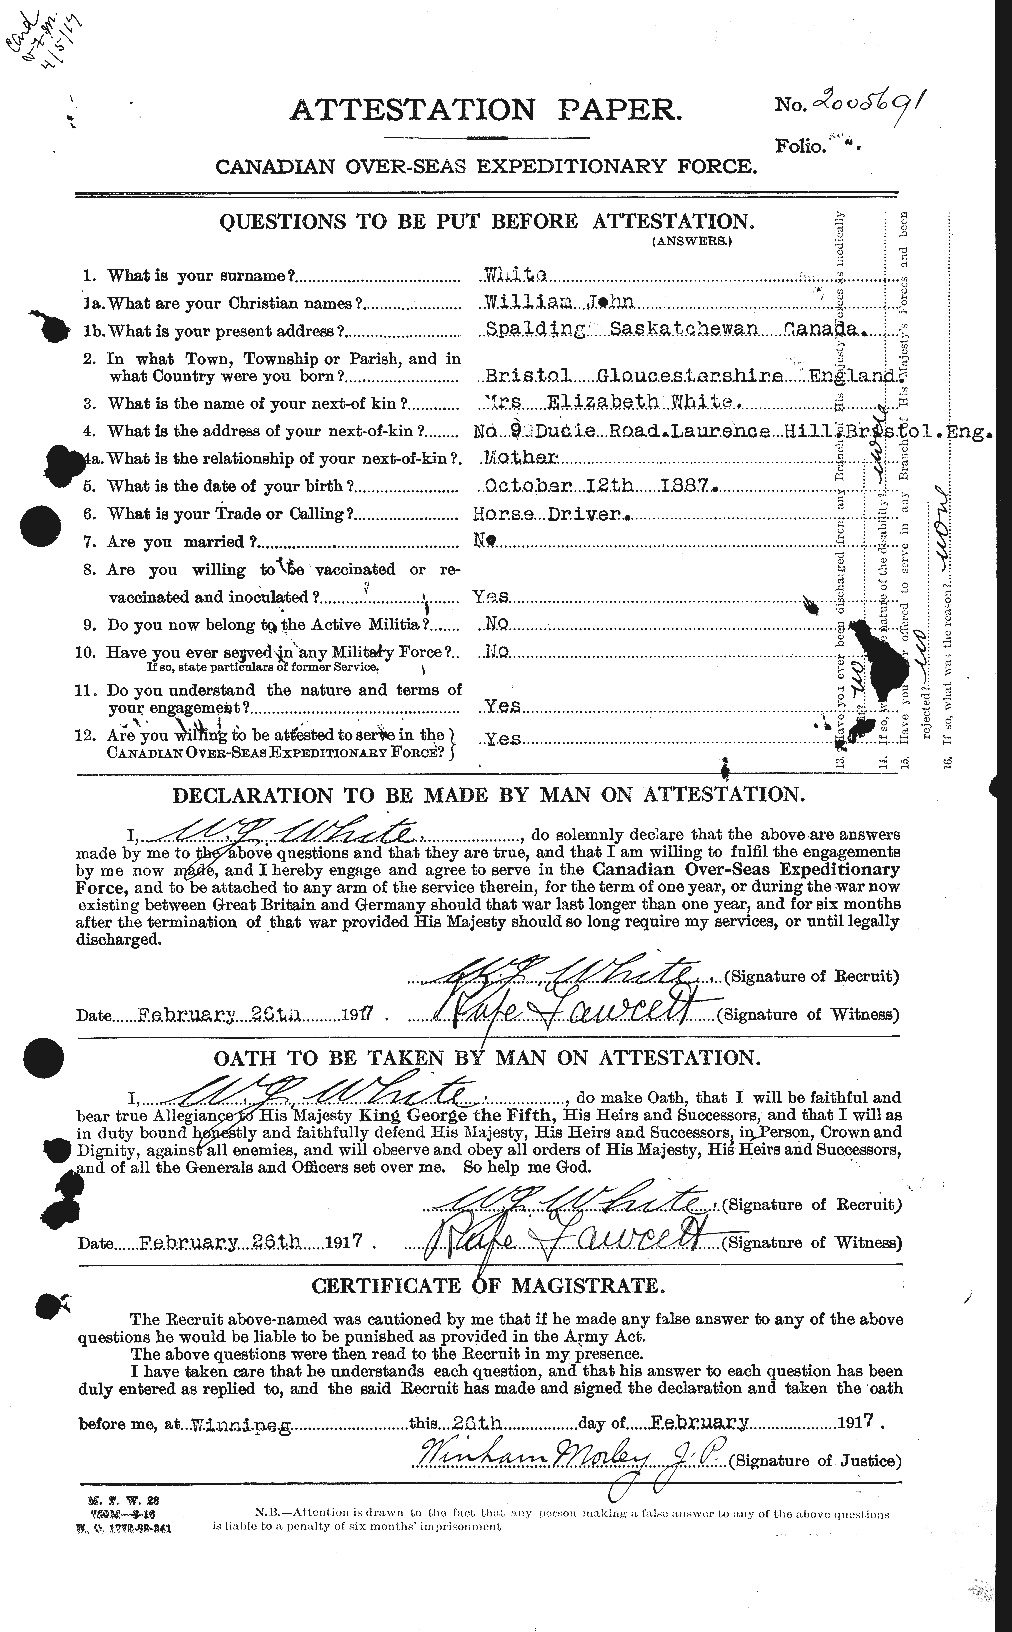 Dossiers du Personnel de la Première Guerre mondiale - CEC 669049a